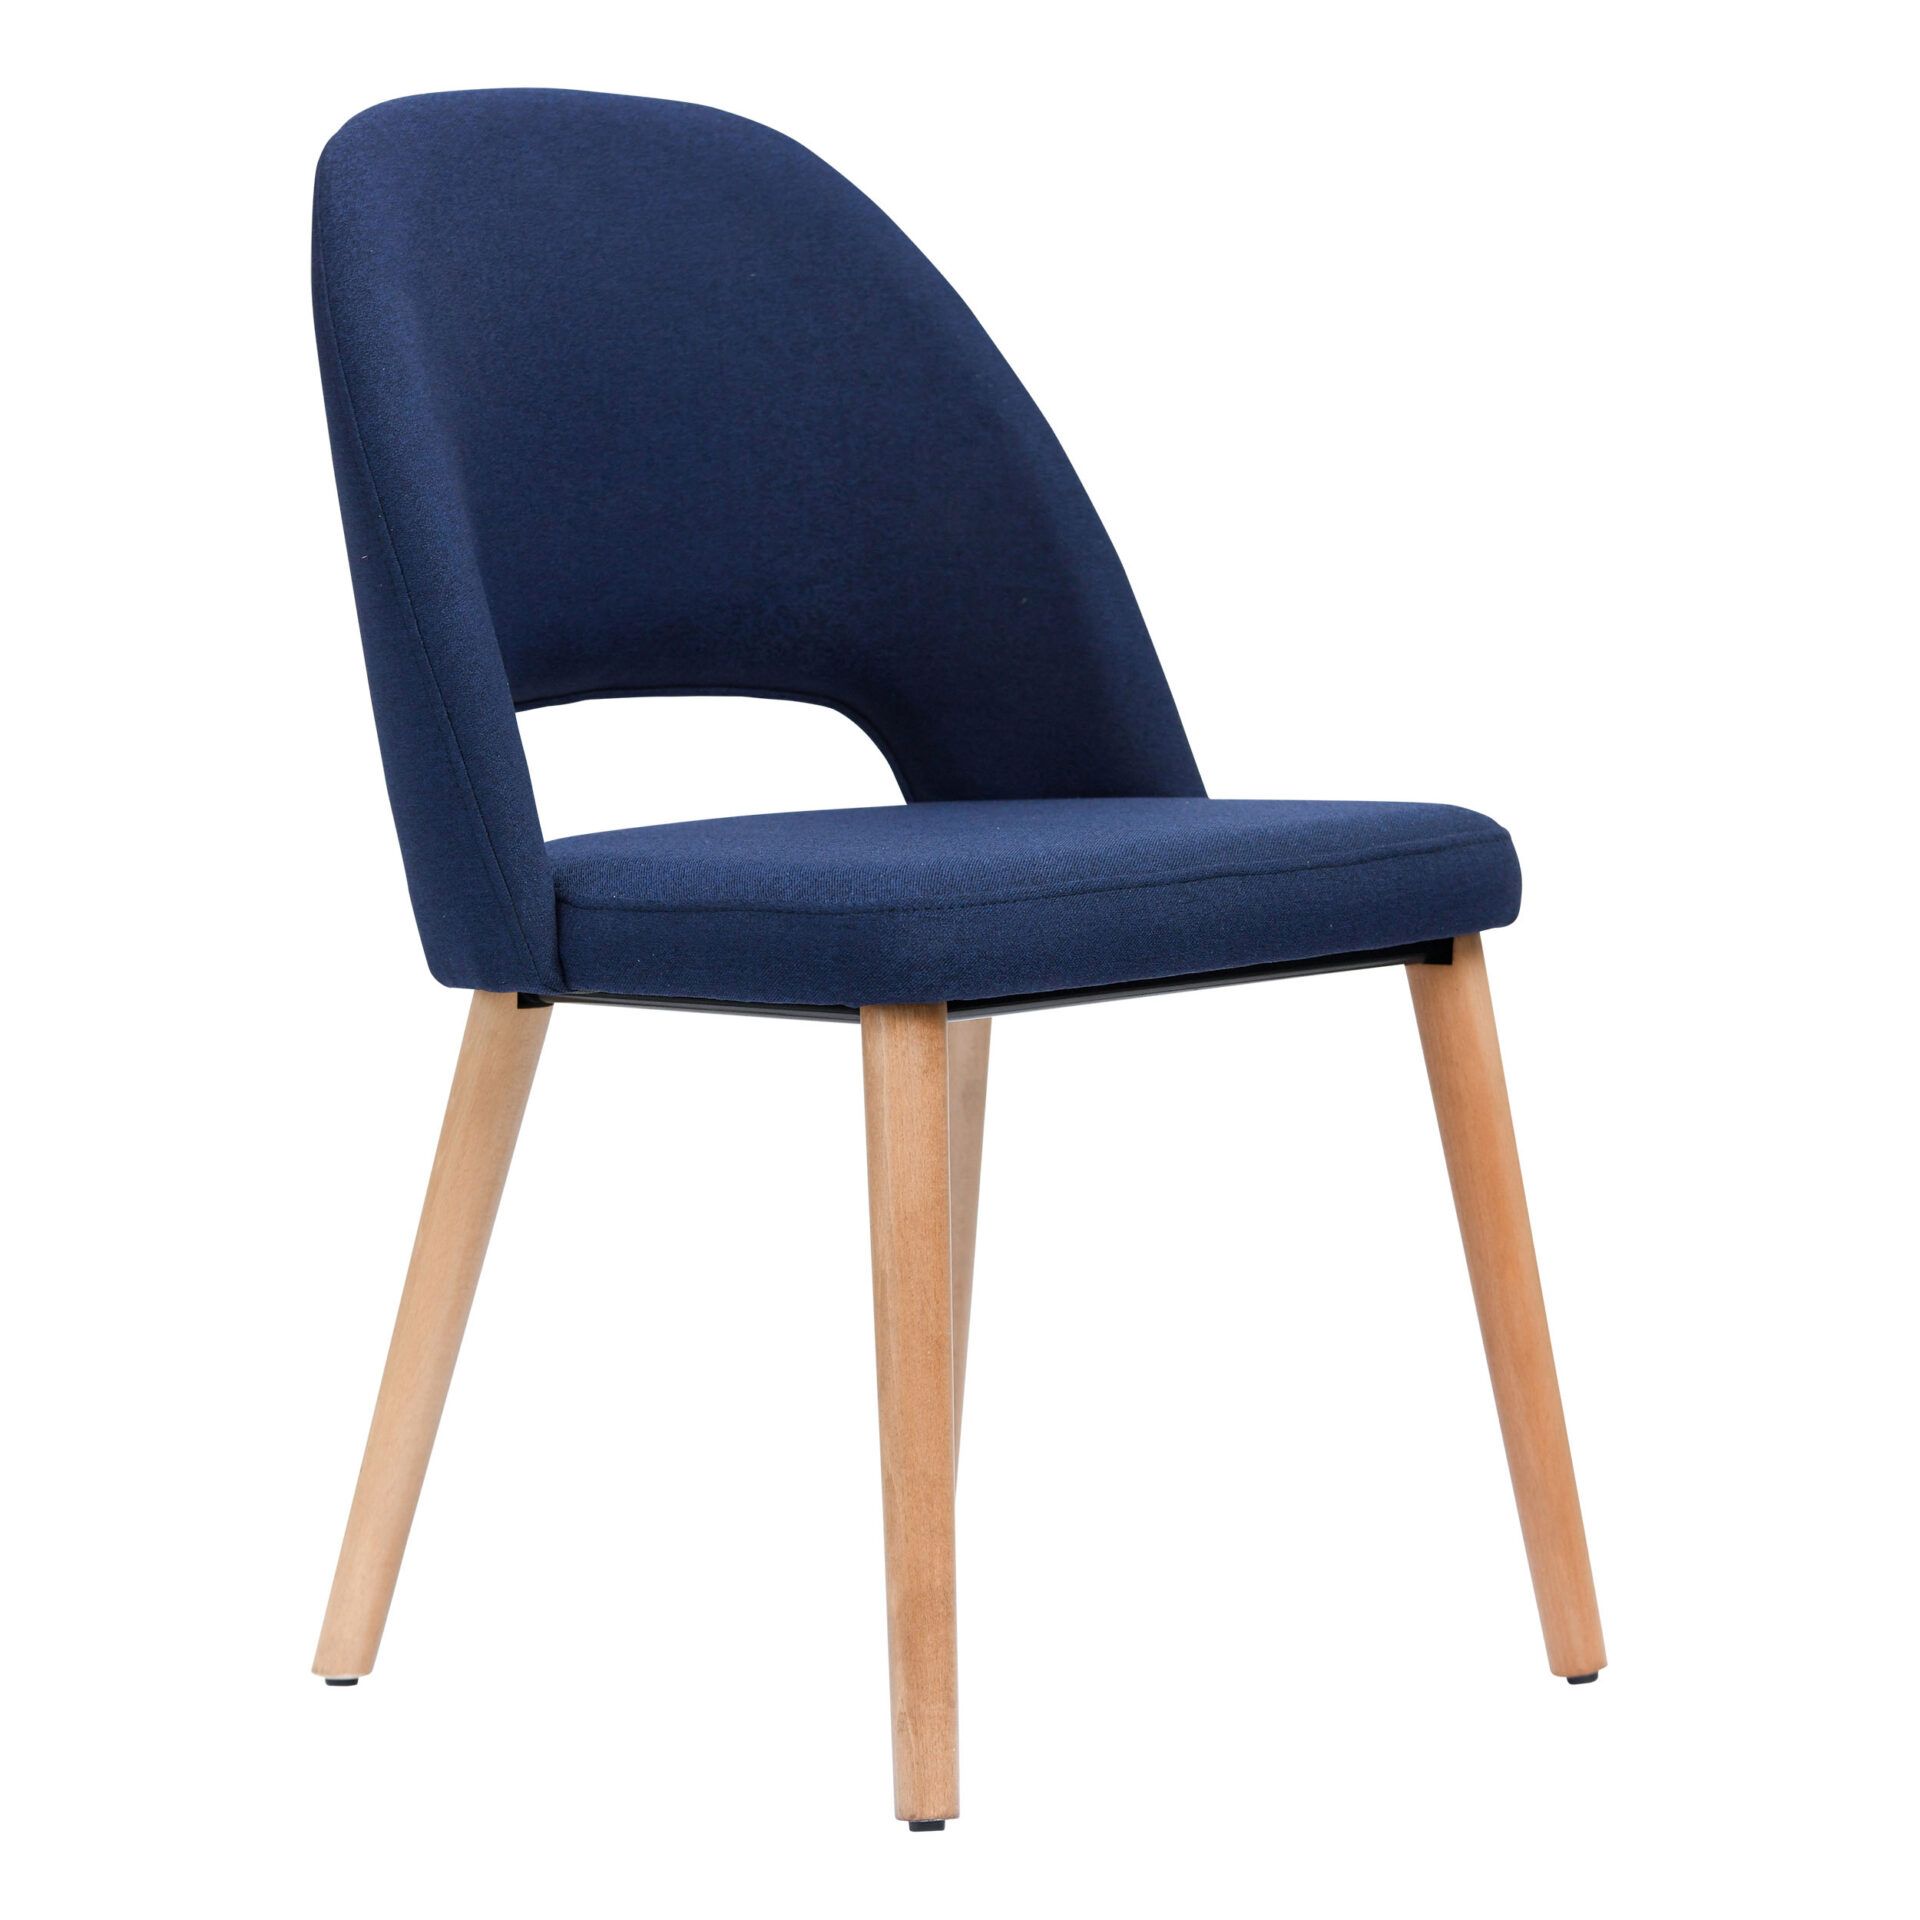 Semifreddo Chair - Trojan Oak Legs/Navy Woven Fabric